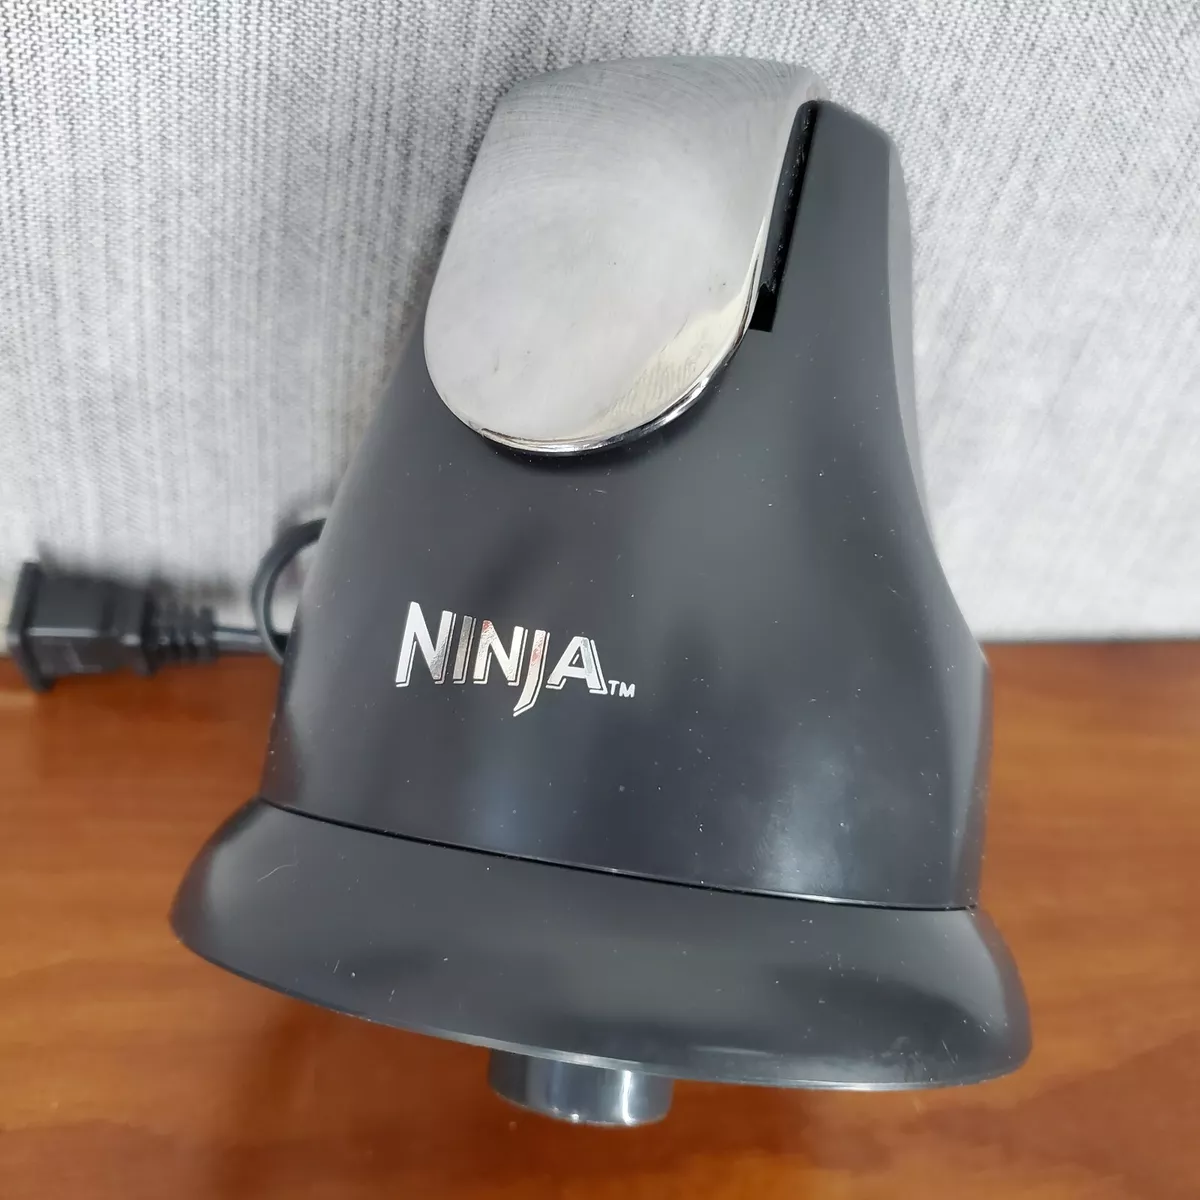  Ninja Food Chopper Express Chop with 200-Watt, 16